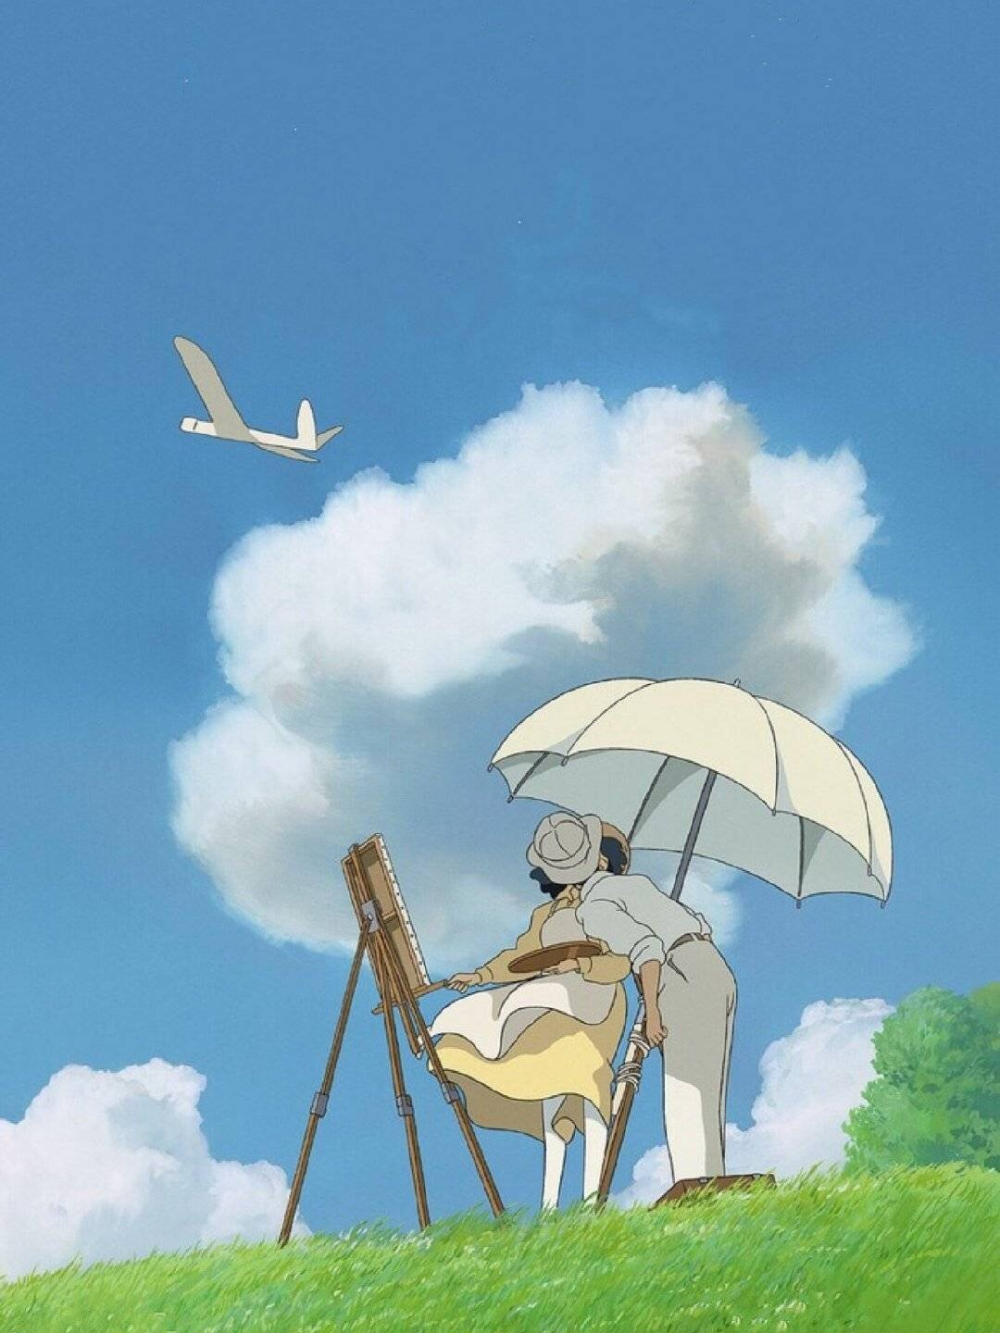 来看看宫崎骏动画里的夏天吧